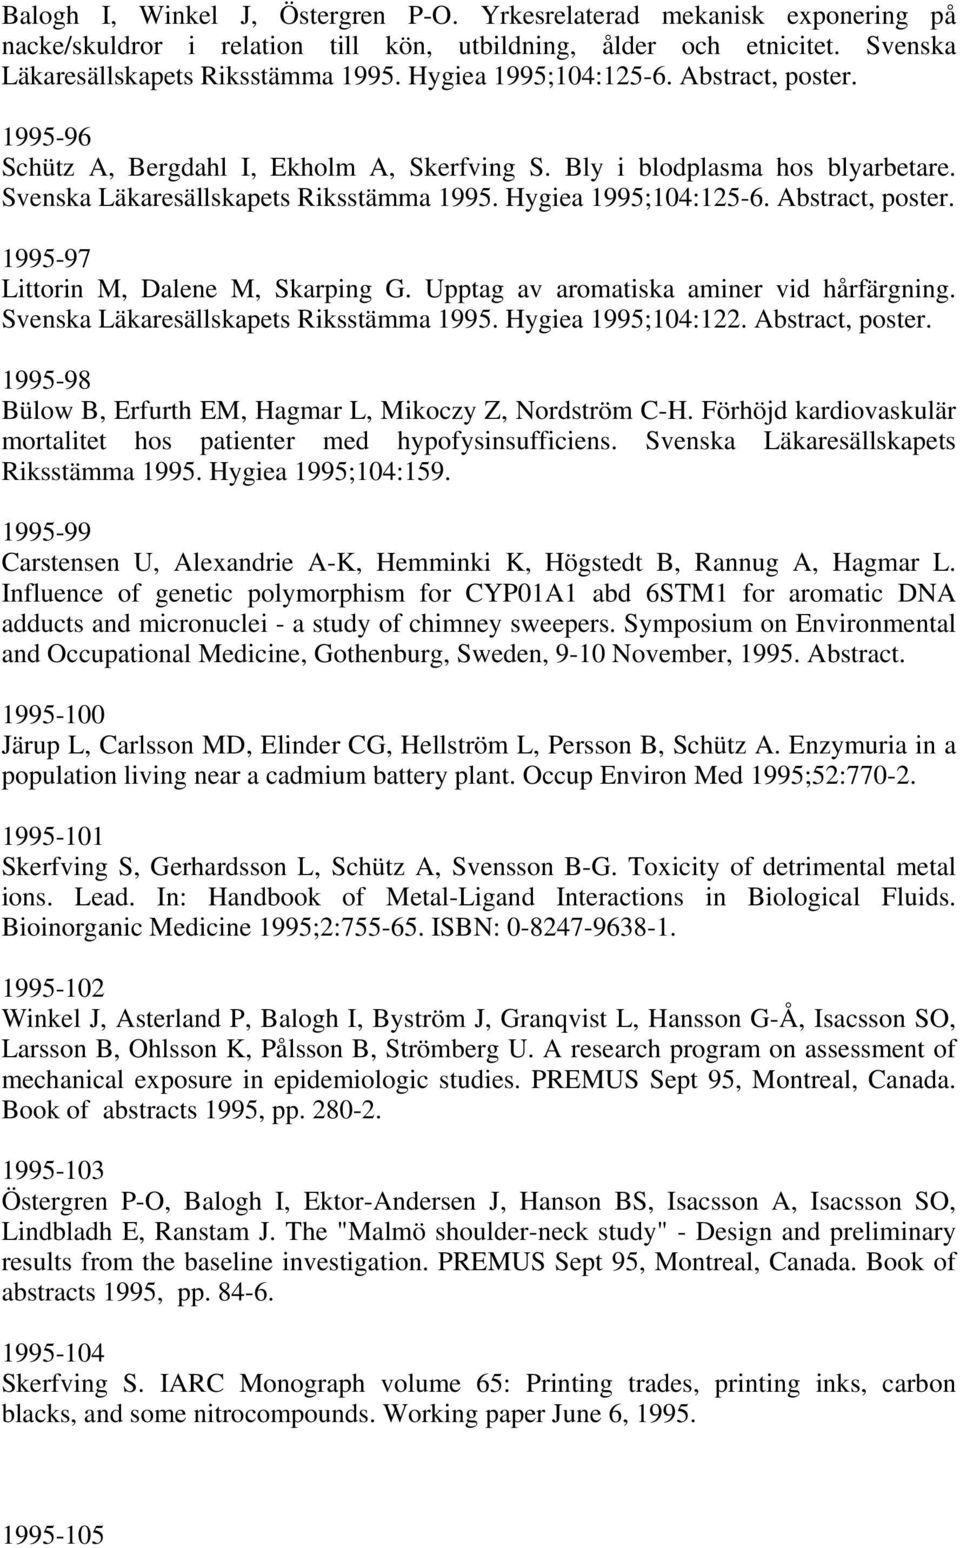 Abstract, poster. 1995-97 Littorin M, Dalene M, Skarping G. Upptag av aromatiska aminer vid hårfärgning. Svenska Läkaresällskapets Riksstämma 1995. Hygiea 1995;104:122. Abstract, poster.